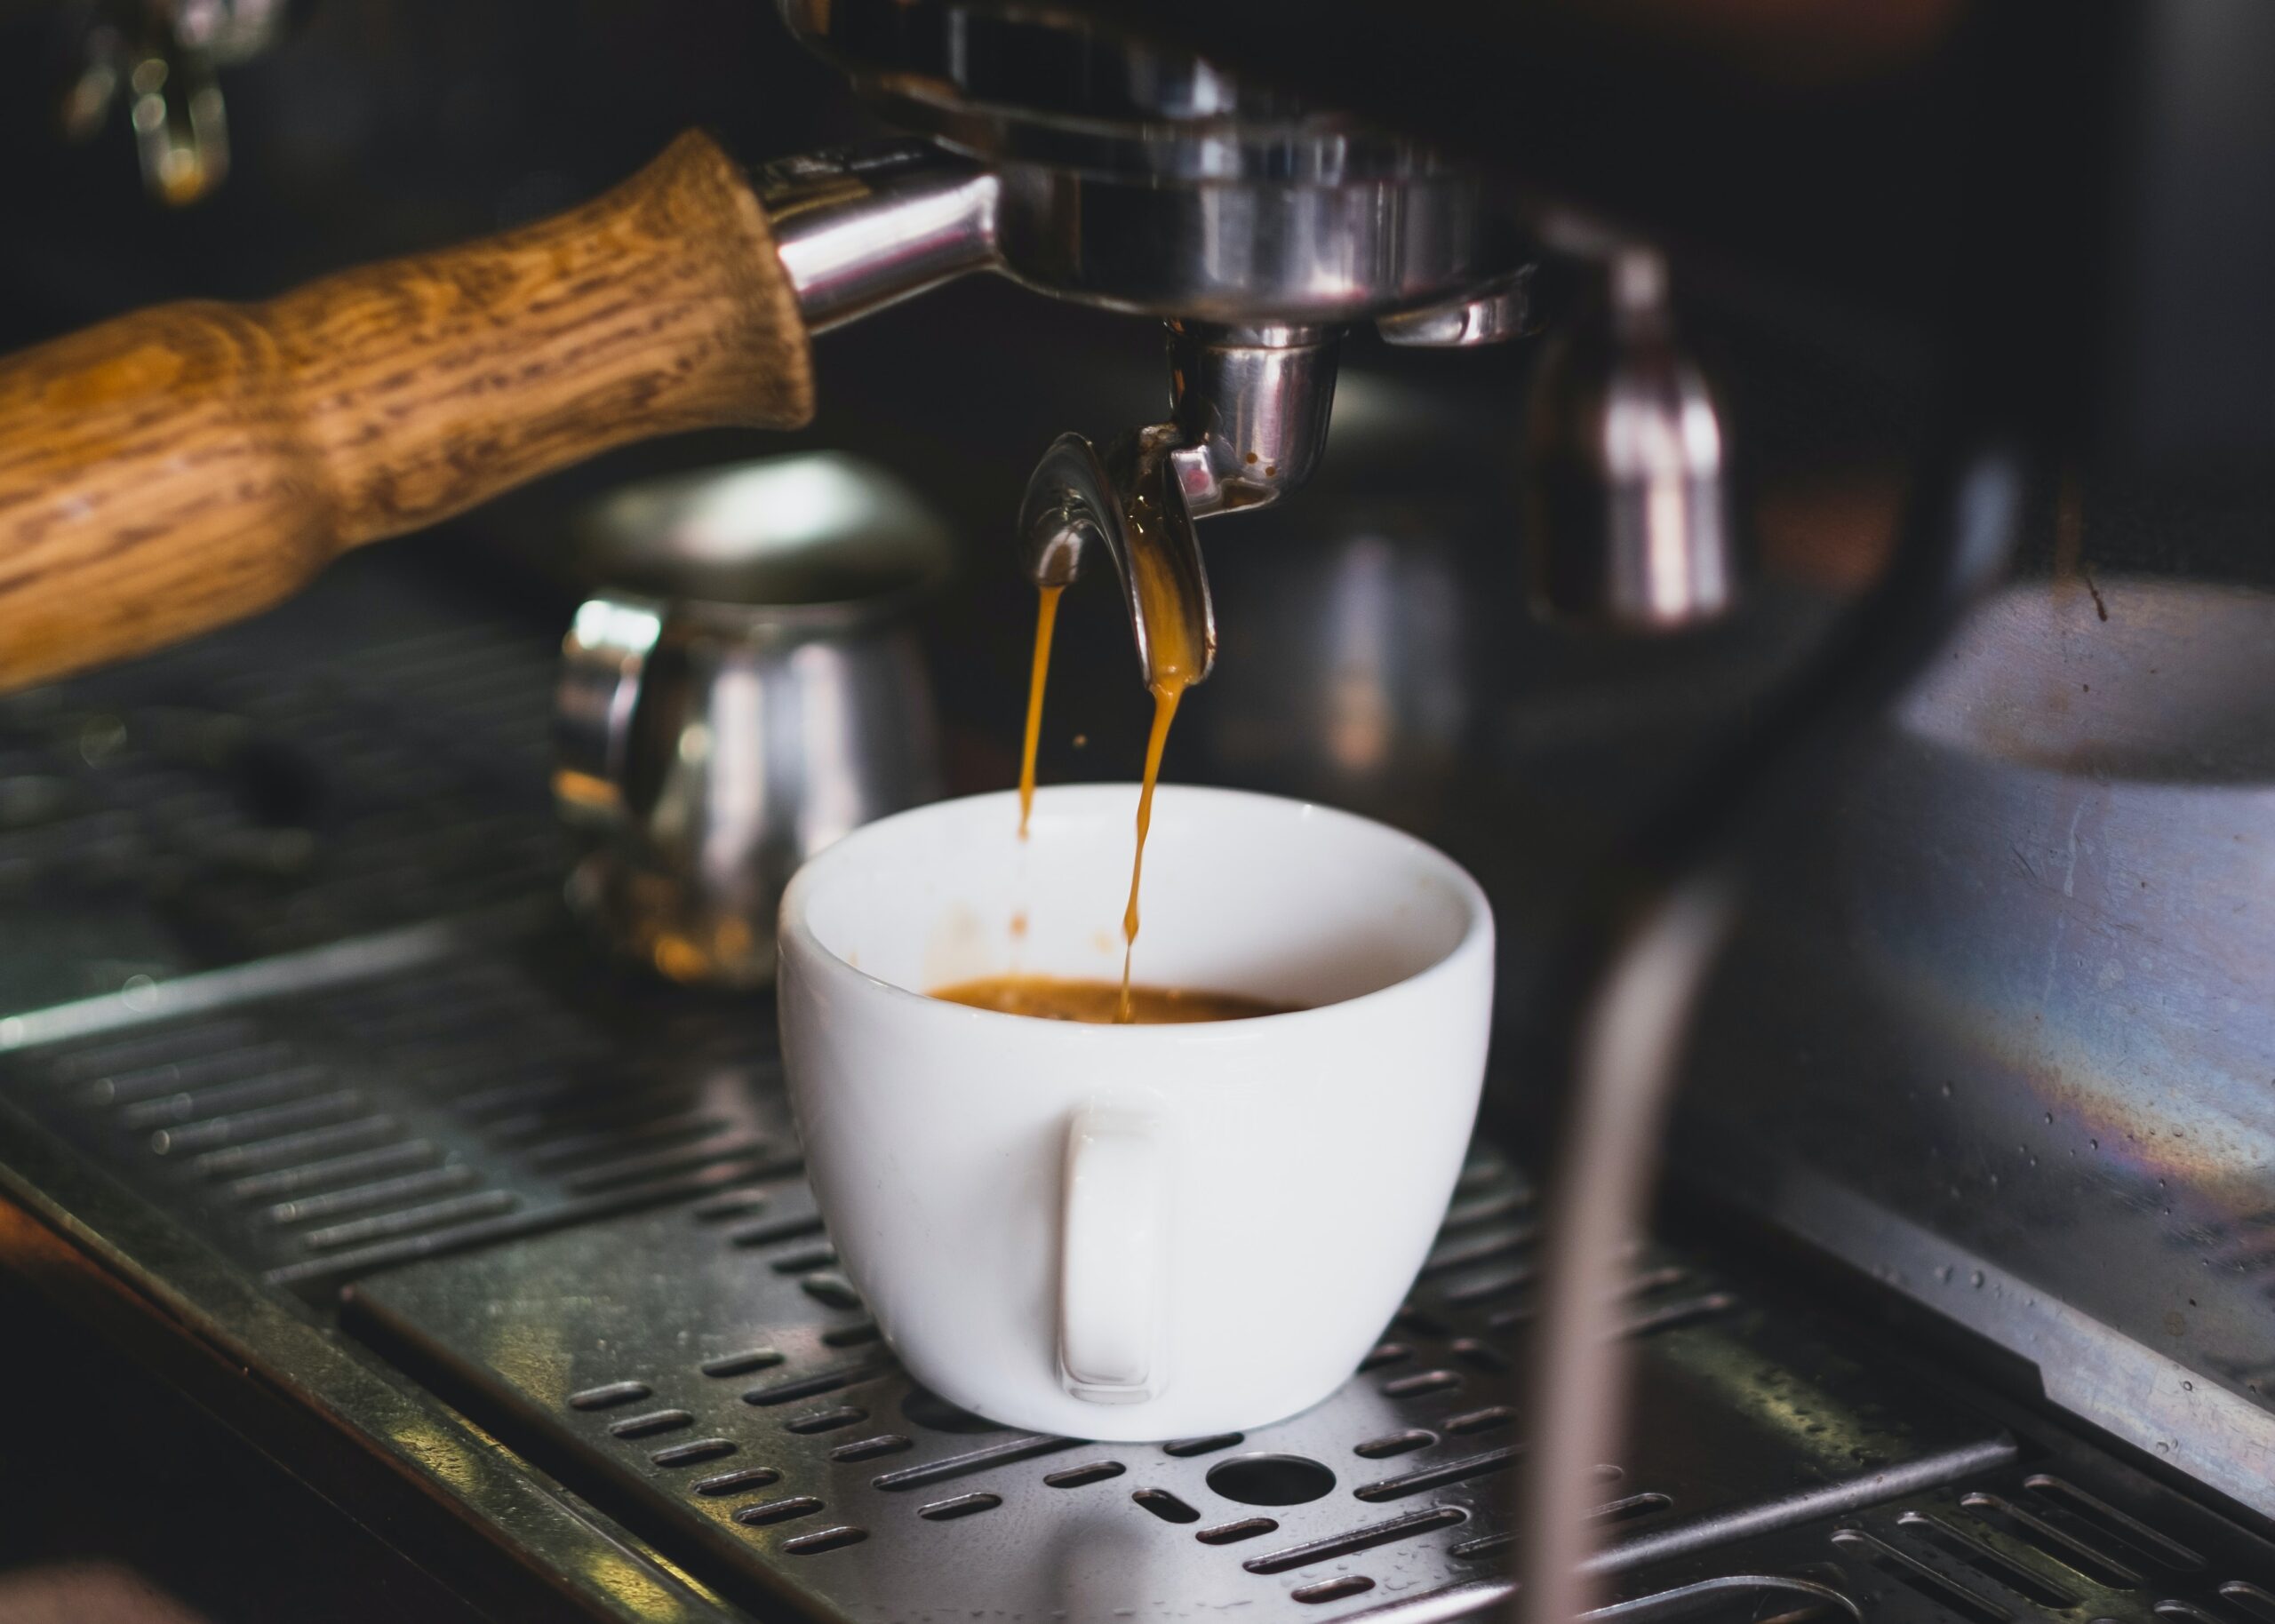 Τέλος εκπτώσεων: 5 μηχανές espresso για να αντικαταστήσετε οικονομικά την καφετιέρα σας